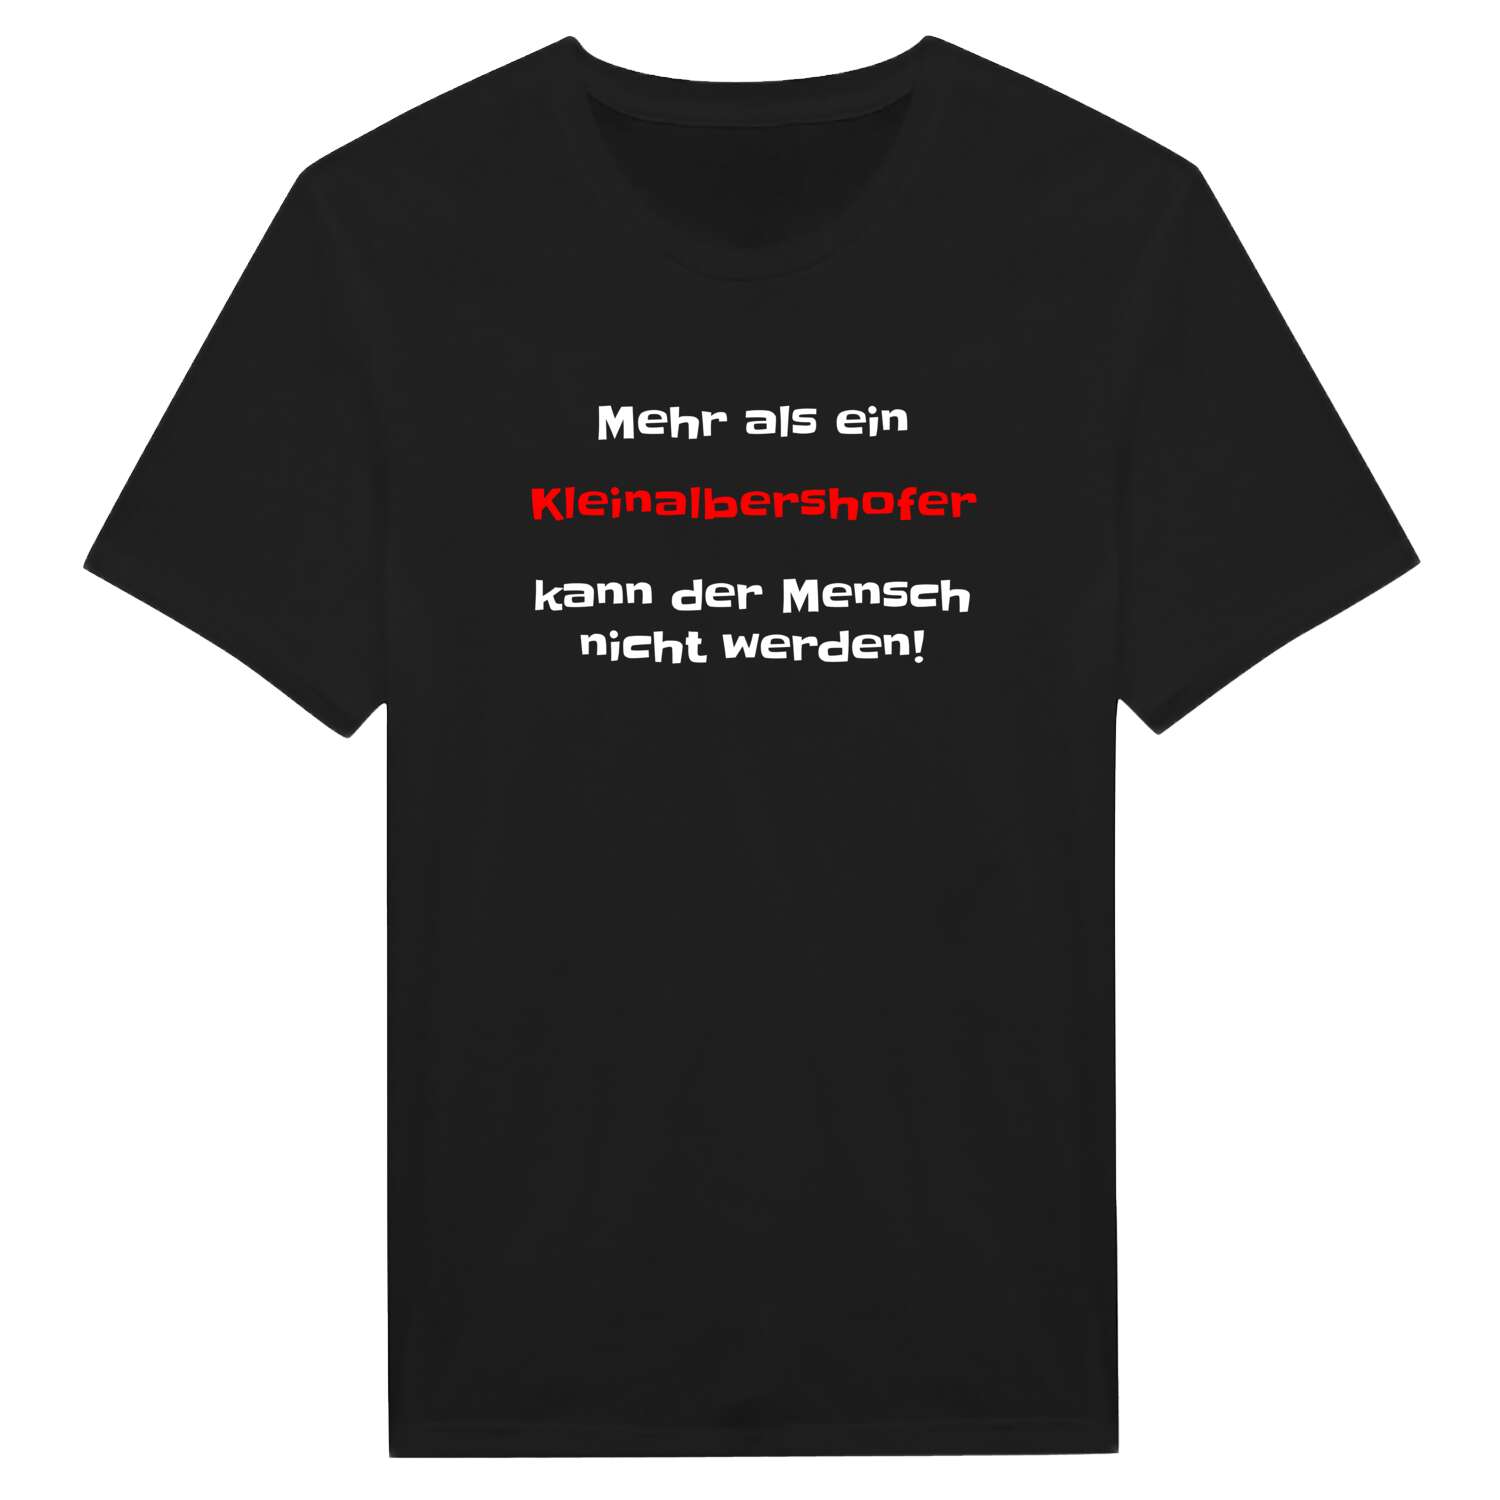 Kleinalbershof T-Shirt »Mehr als ein«